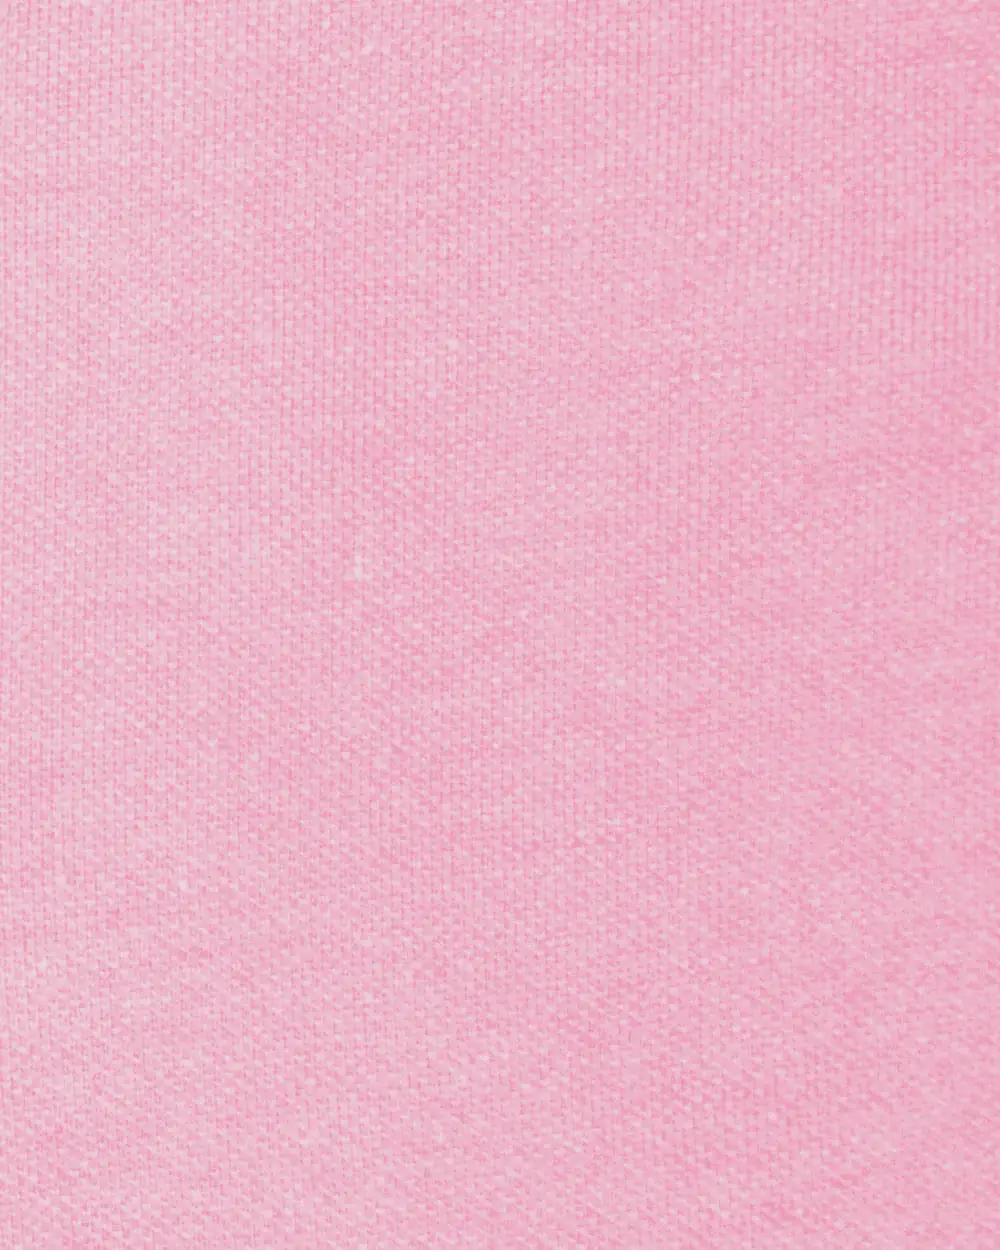 Blusa sport slim fit manga corta rosada